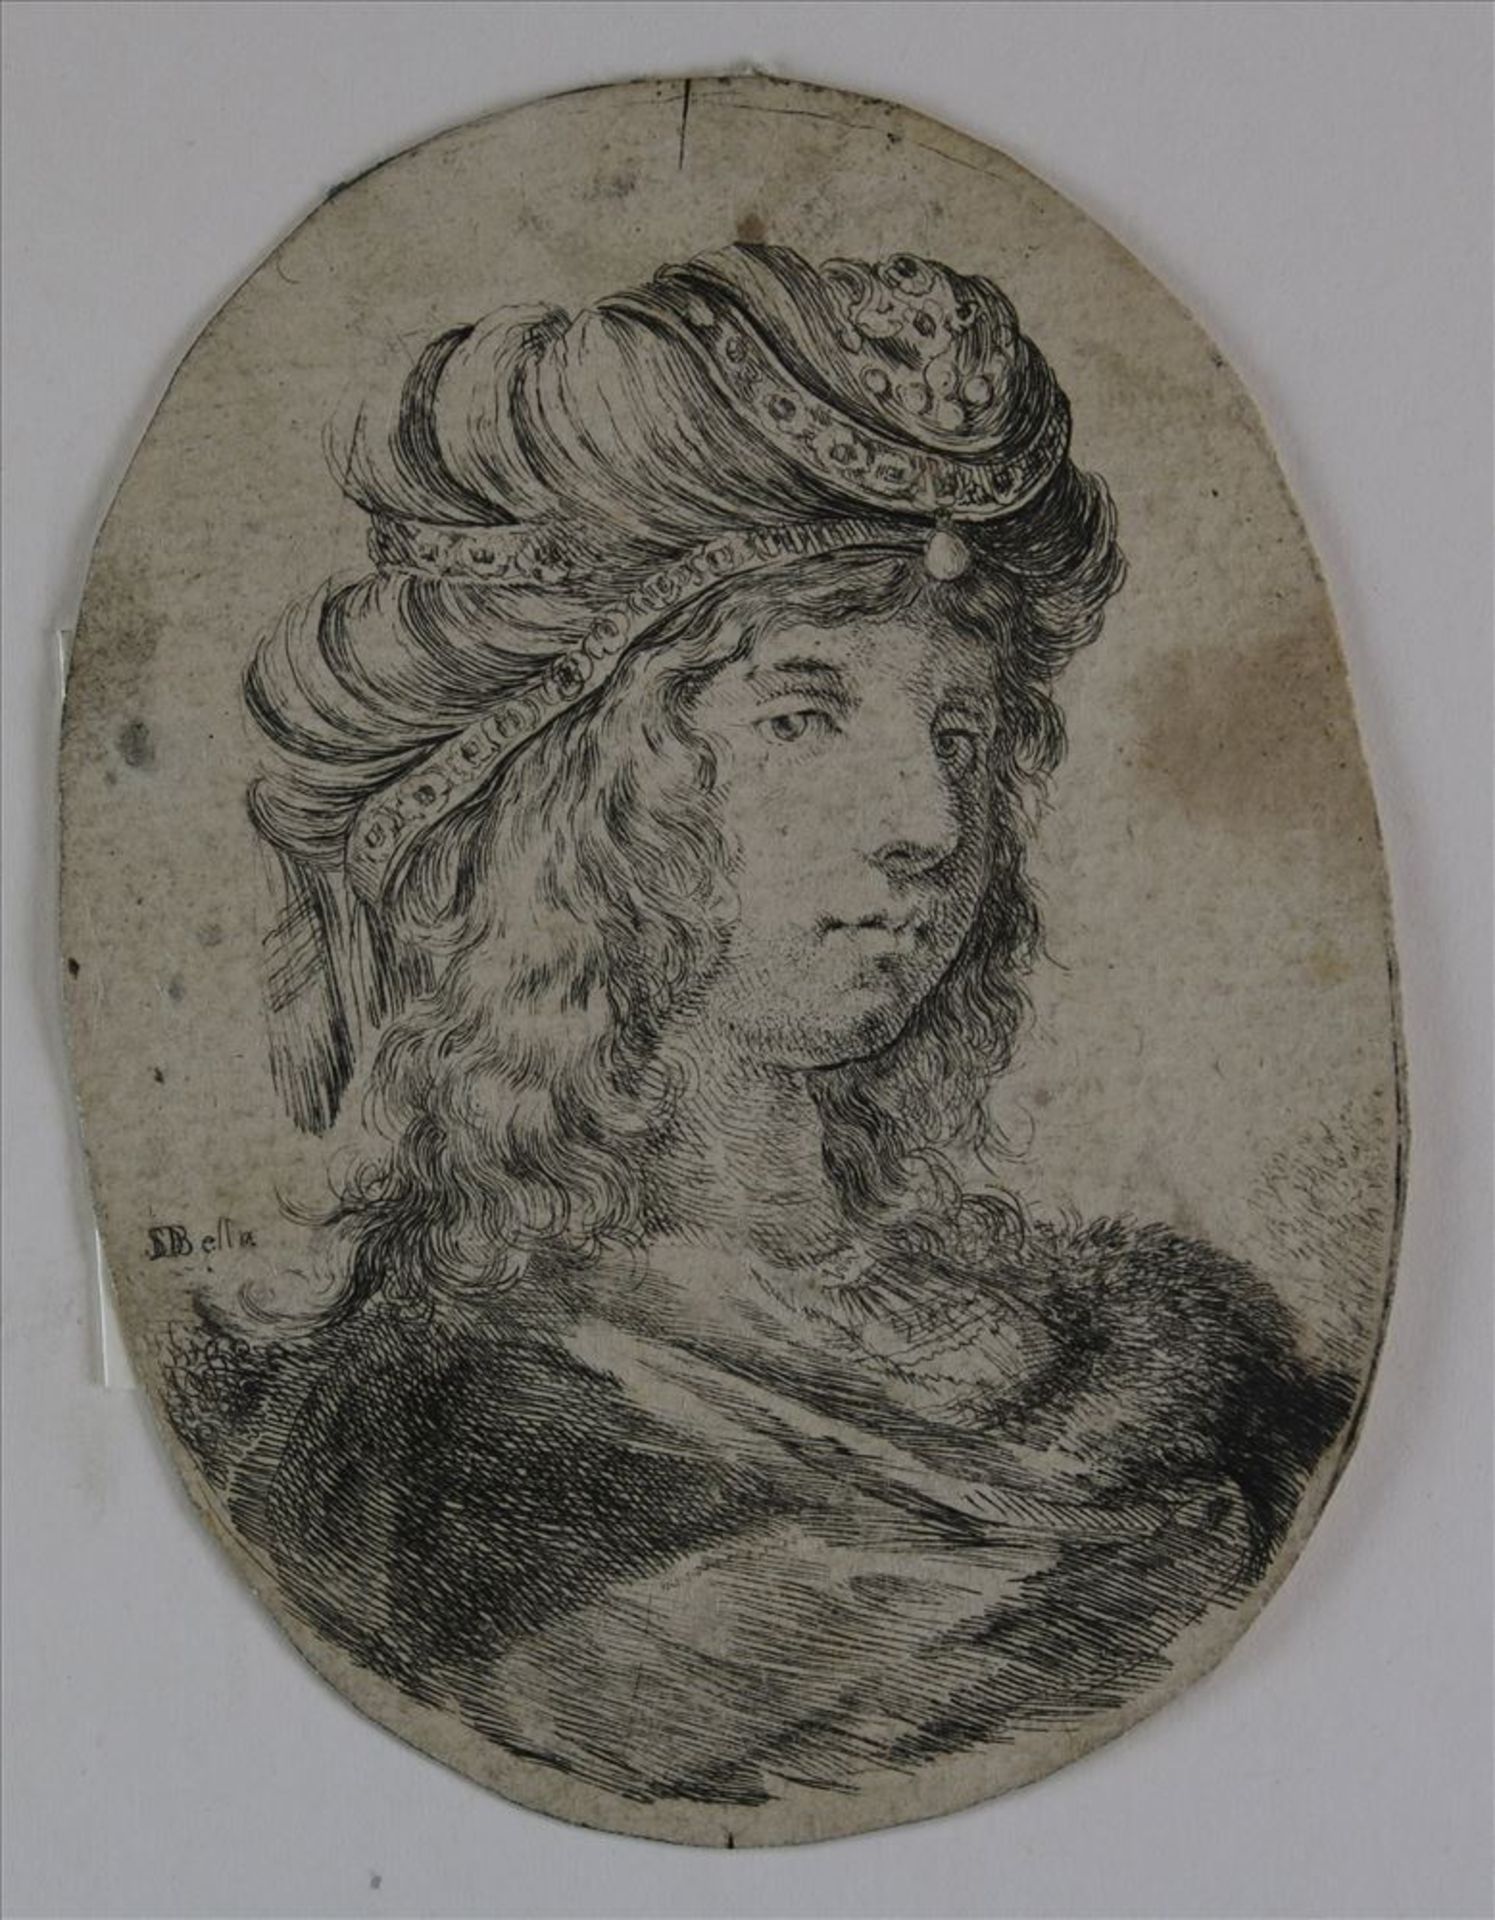 Bella, Stefano della 1610-1664 Portrait mit persischer Frisur. Radierung als Tondo bechnitten. Verso